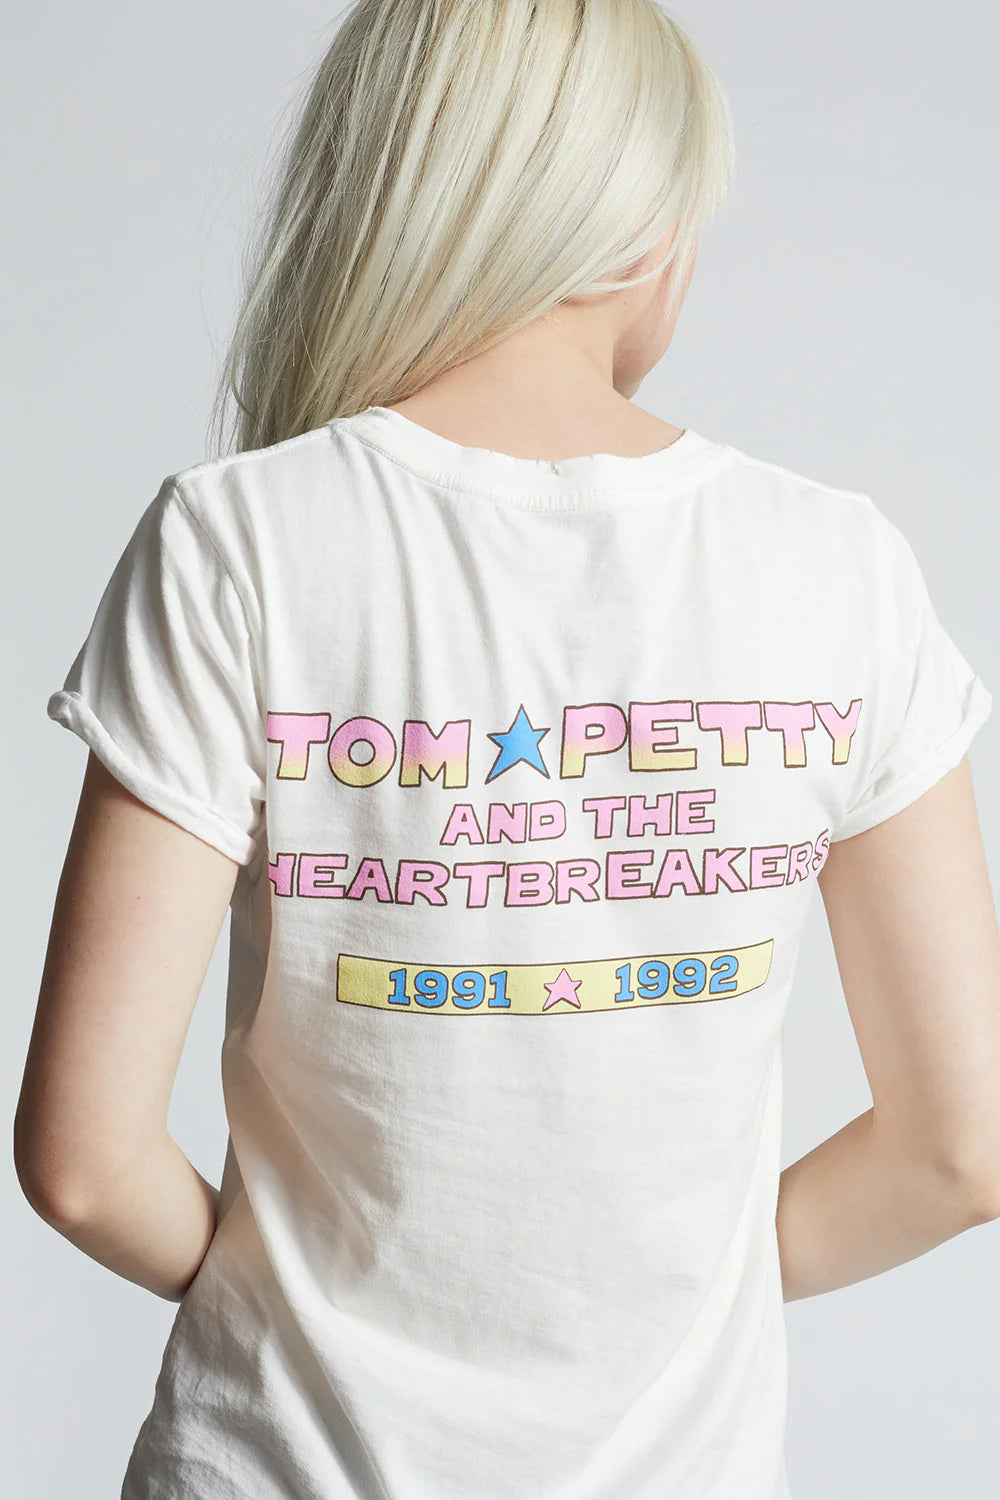 Tom Petty Heartbreakers Tee